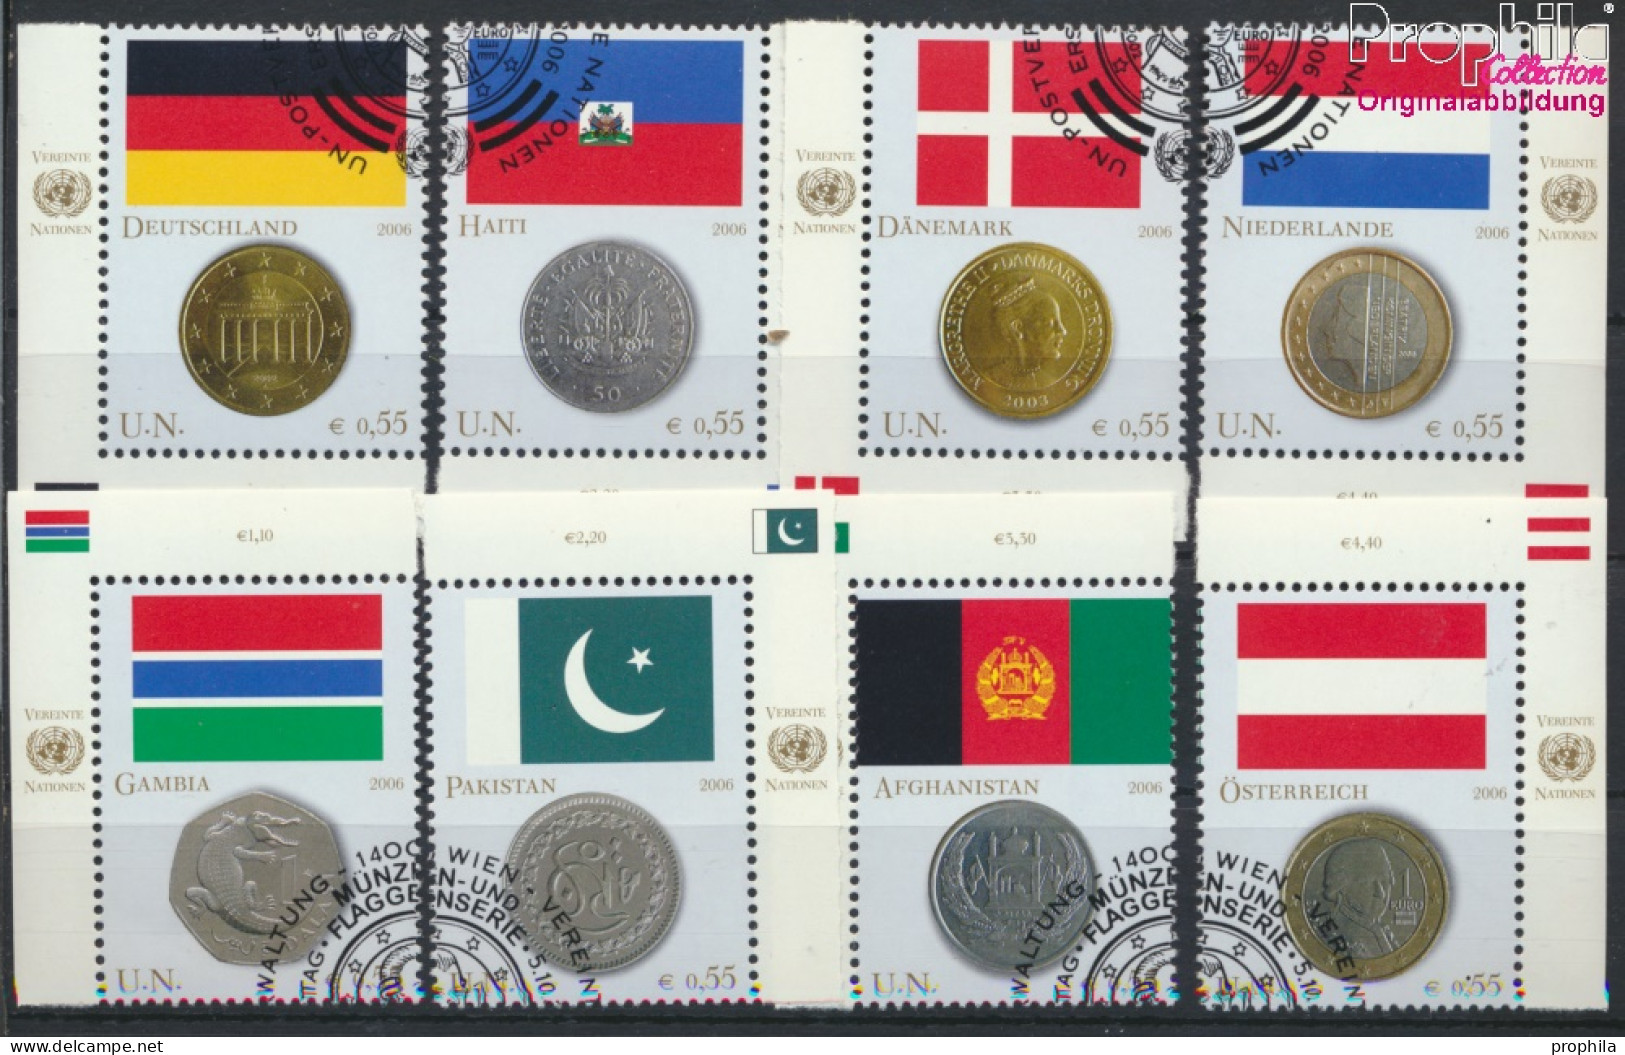 UNO - Wien 477-484 (kompl.Ausg.) Gestempelt 2006 Flaggen Und Münzen (10054404 - Used Stamps